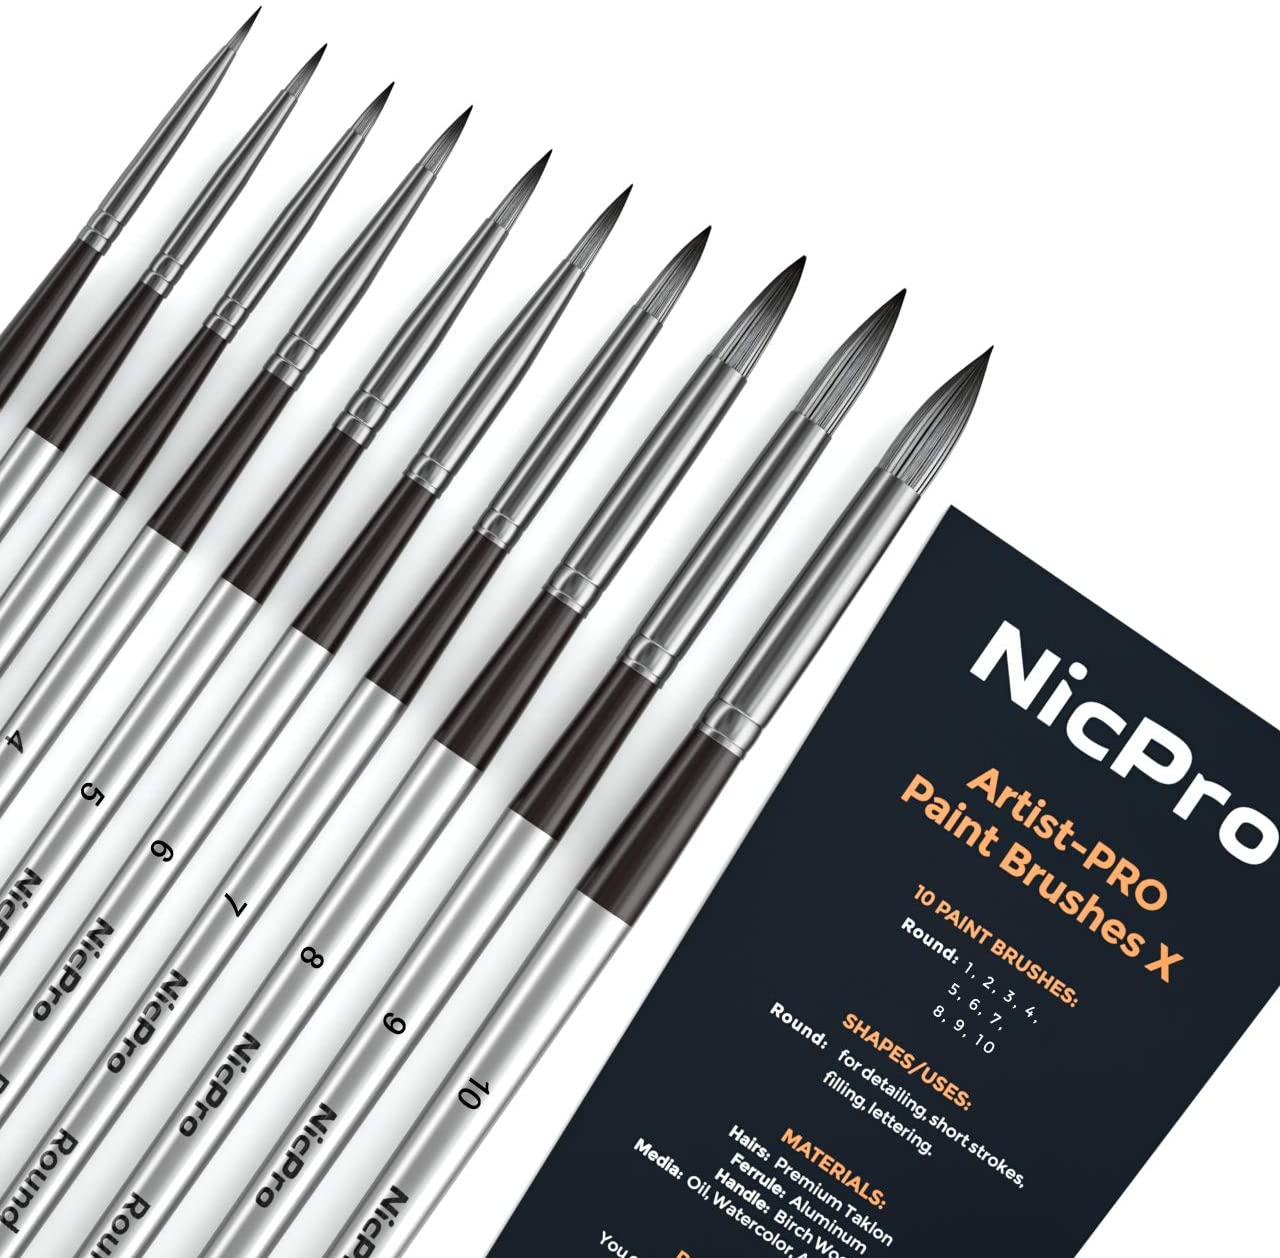 Nicpro Fan Paint Brushes 10 PCS Artist Painting Brush Set Soft Anti-Sh